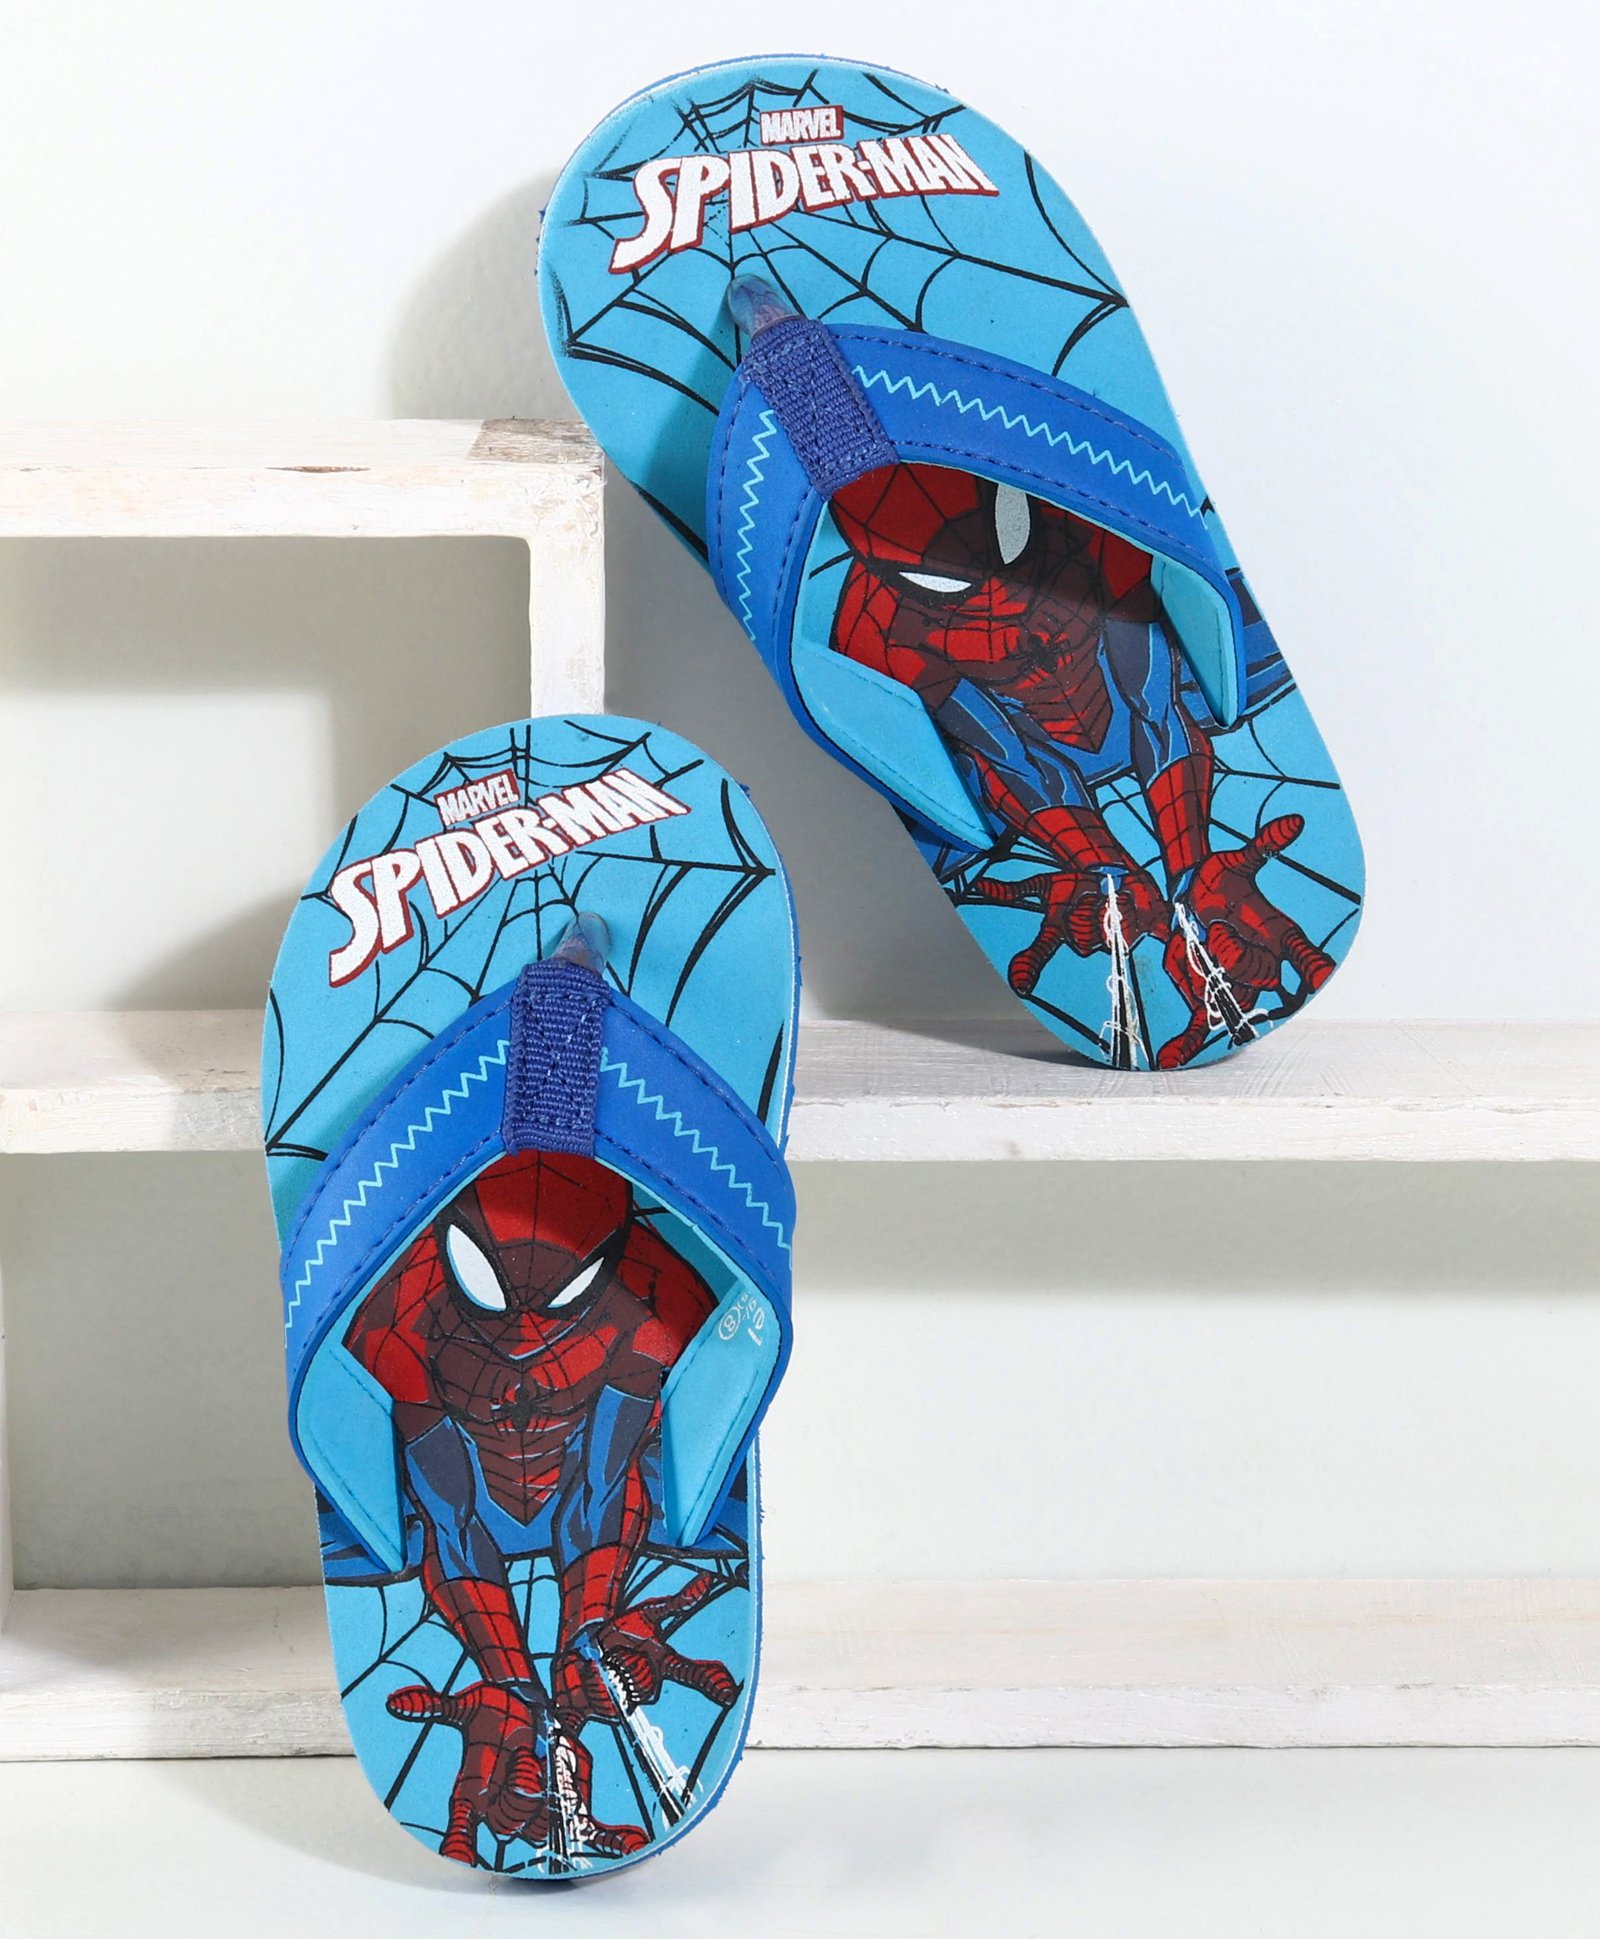 spider man flip flops